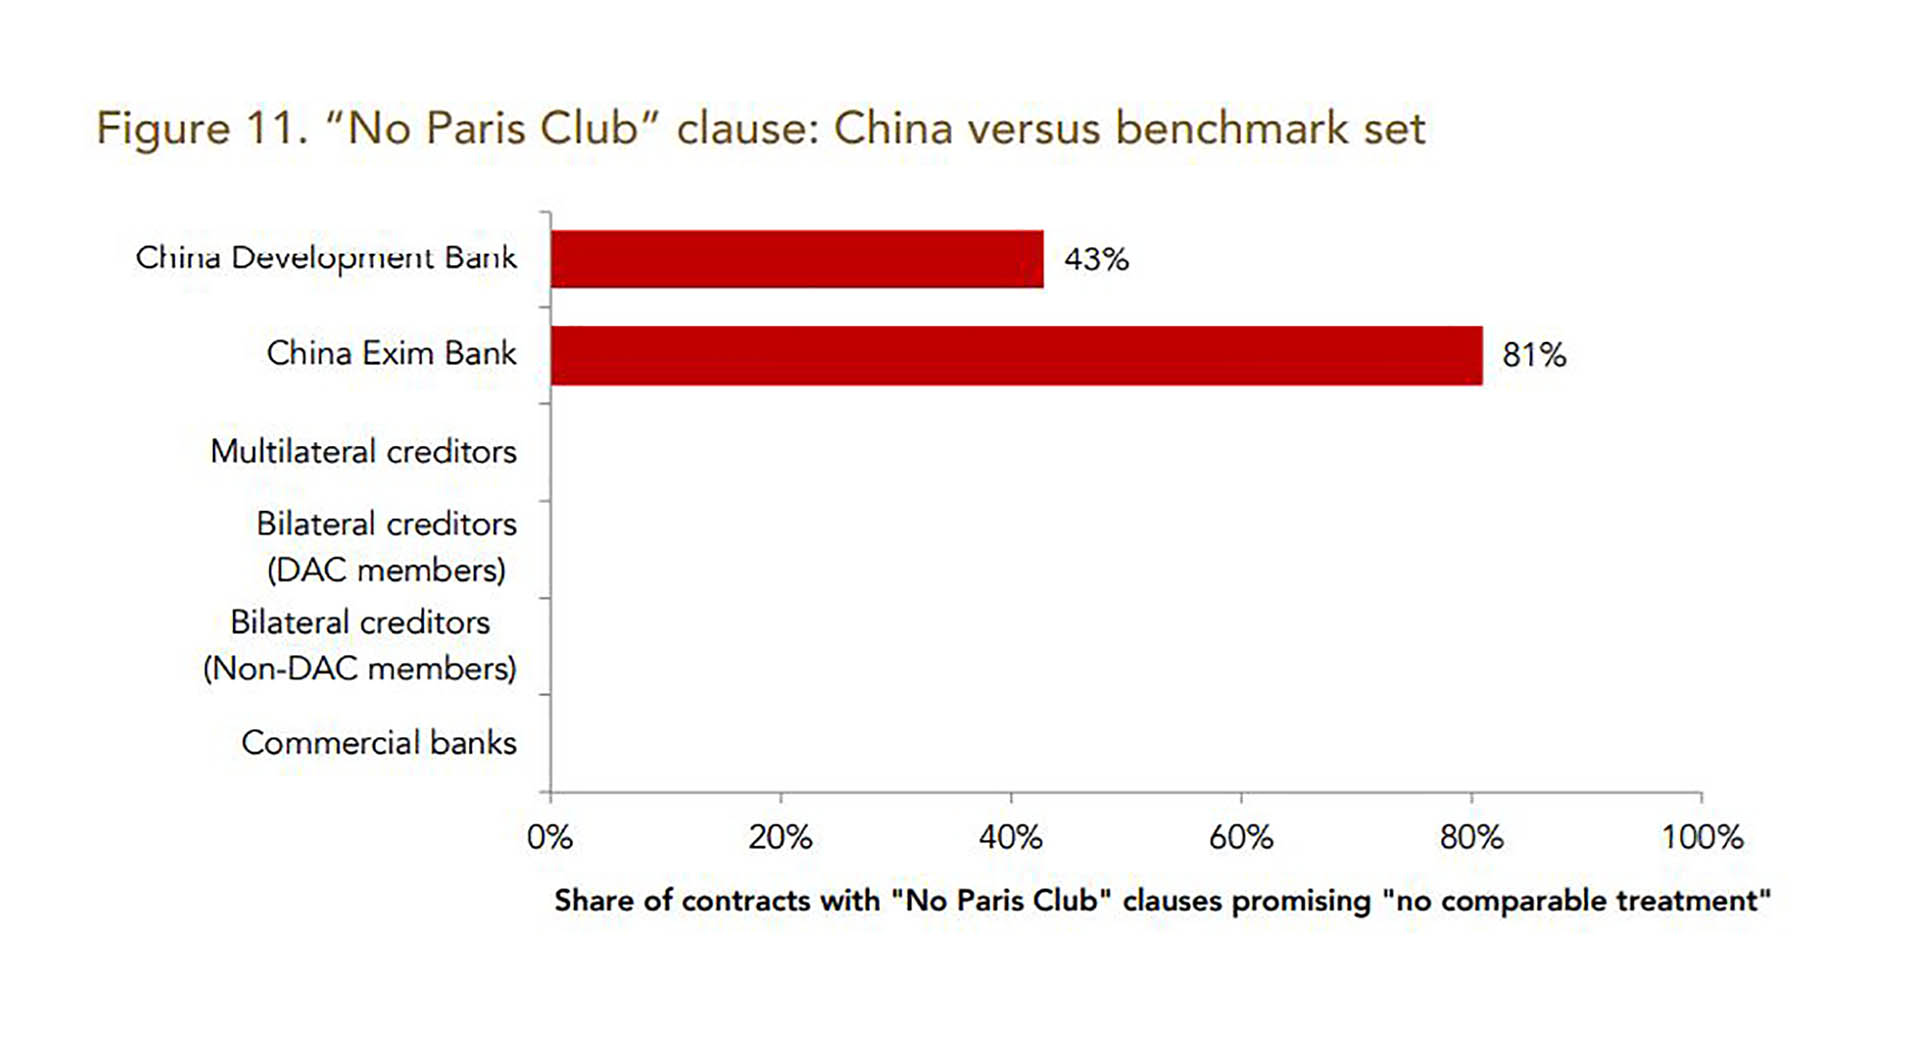 Un gráfico del estudio compara el uso de cláusulas "No Paris Club" de los prestamistas chinos con los de otros países e instituciones